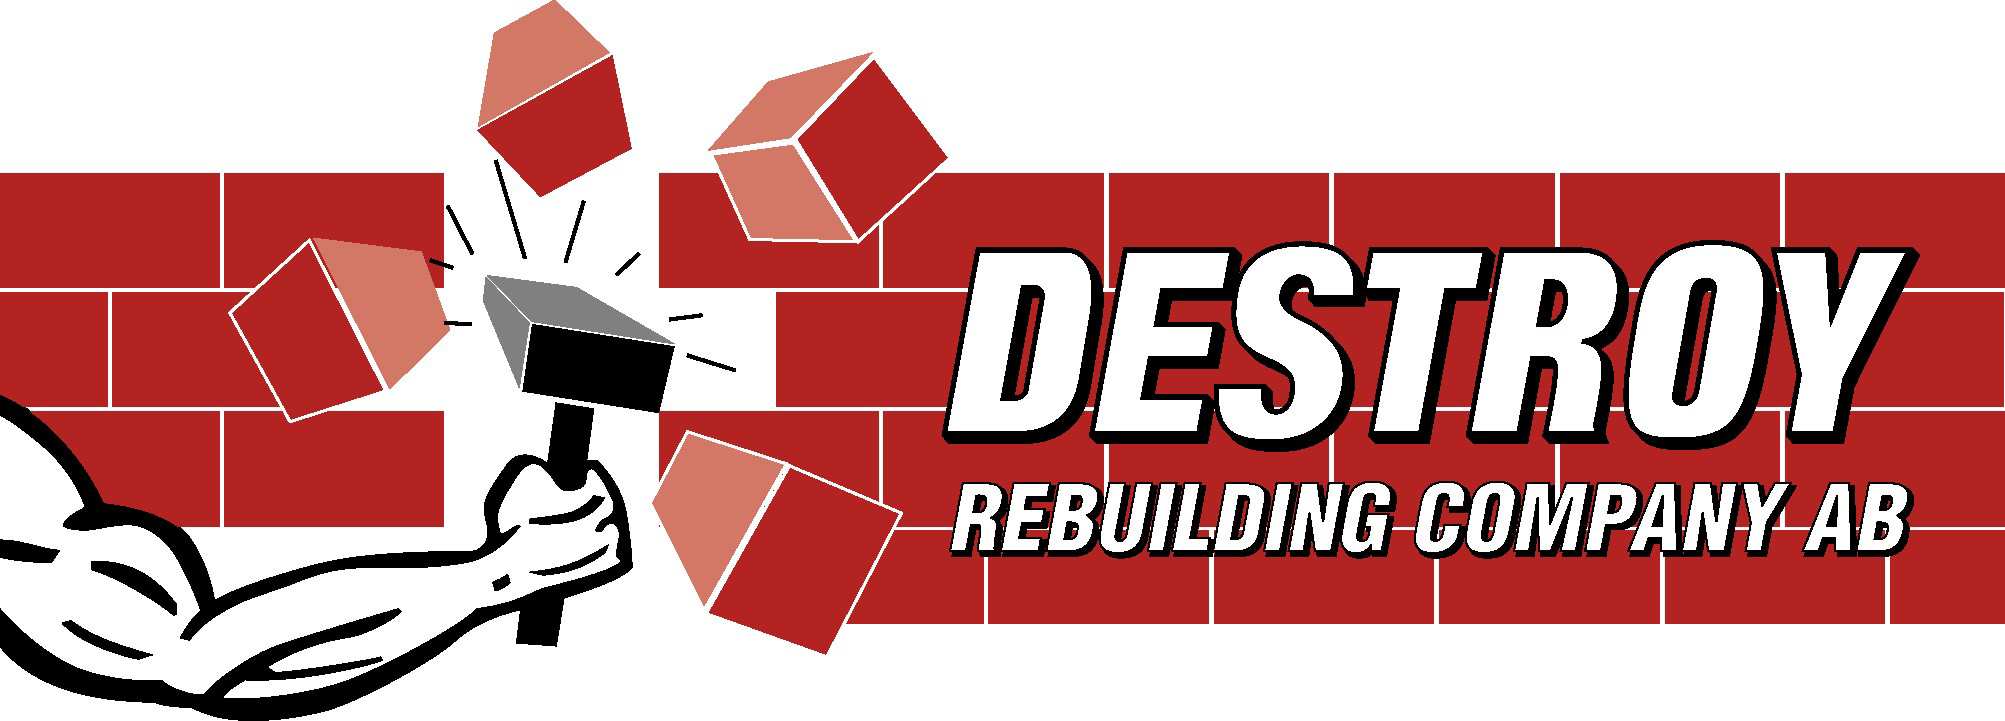 DESTROY REBUILDING COMPANY AB